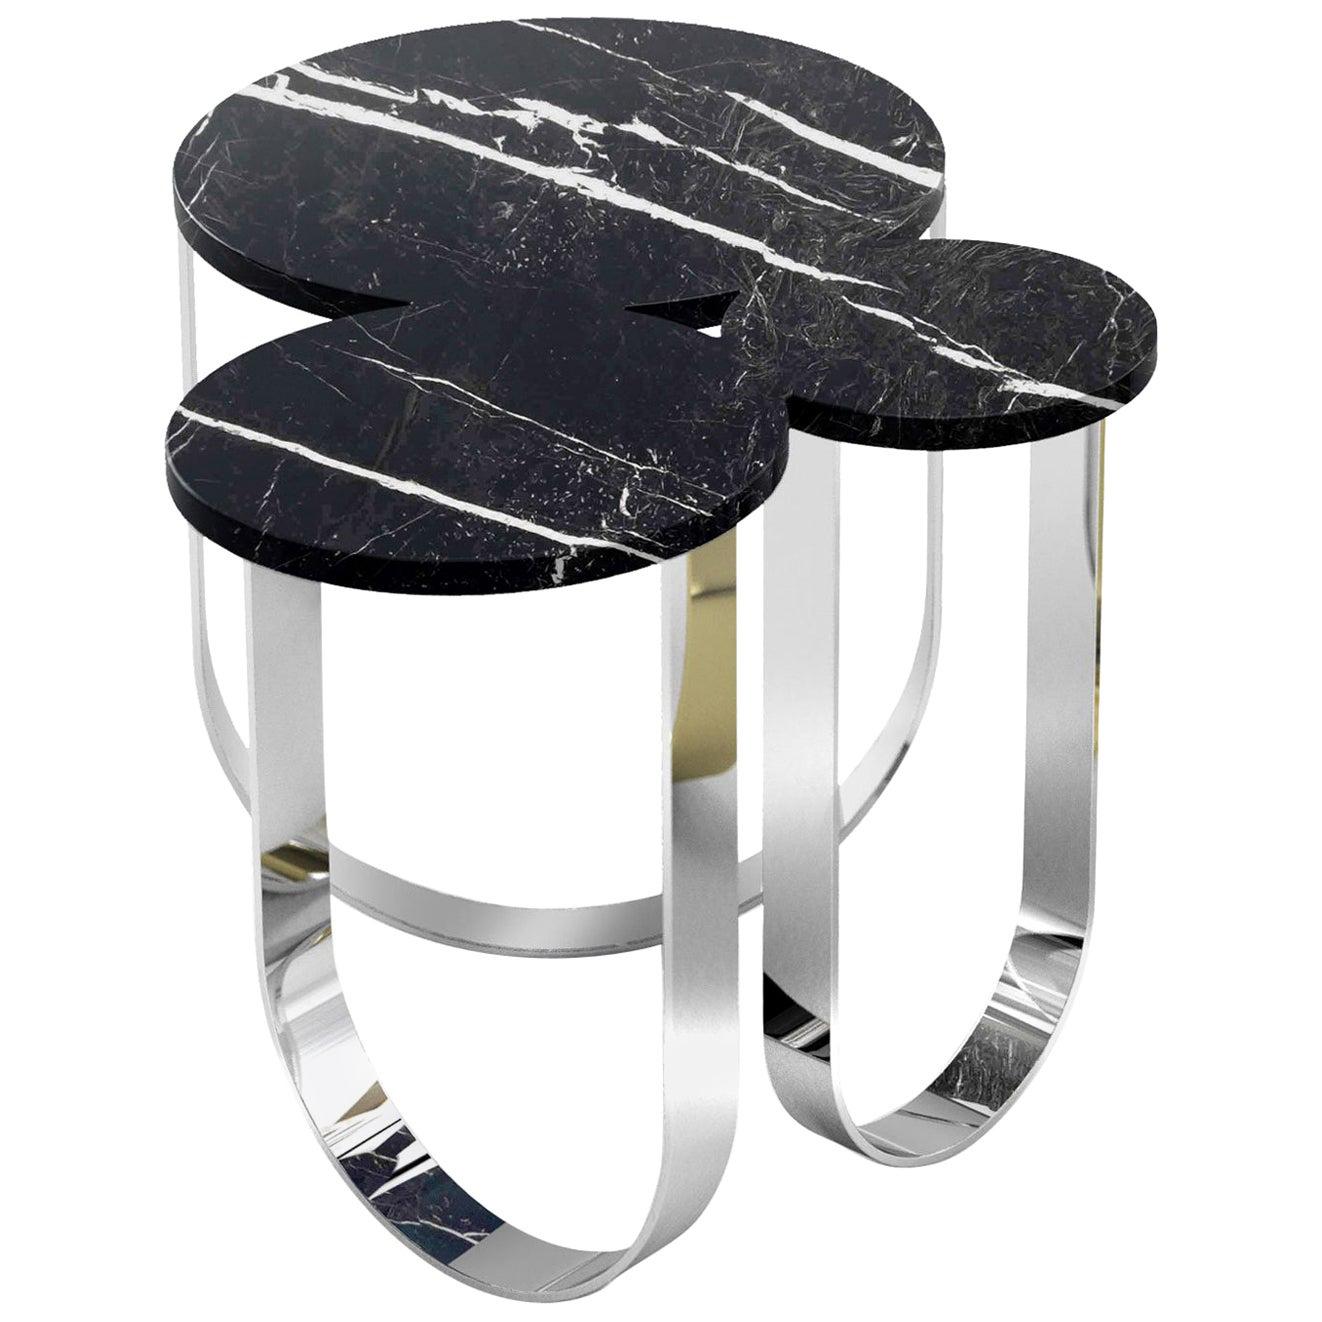 Runder Beistelltisch in organischer Form aus Marmor und schwarzem Stahl mit Sammlerdesign